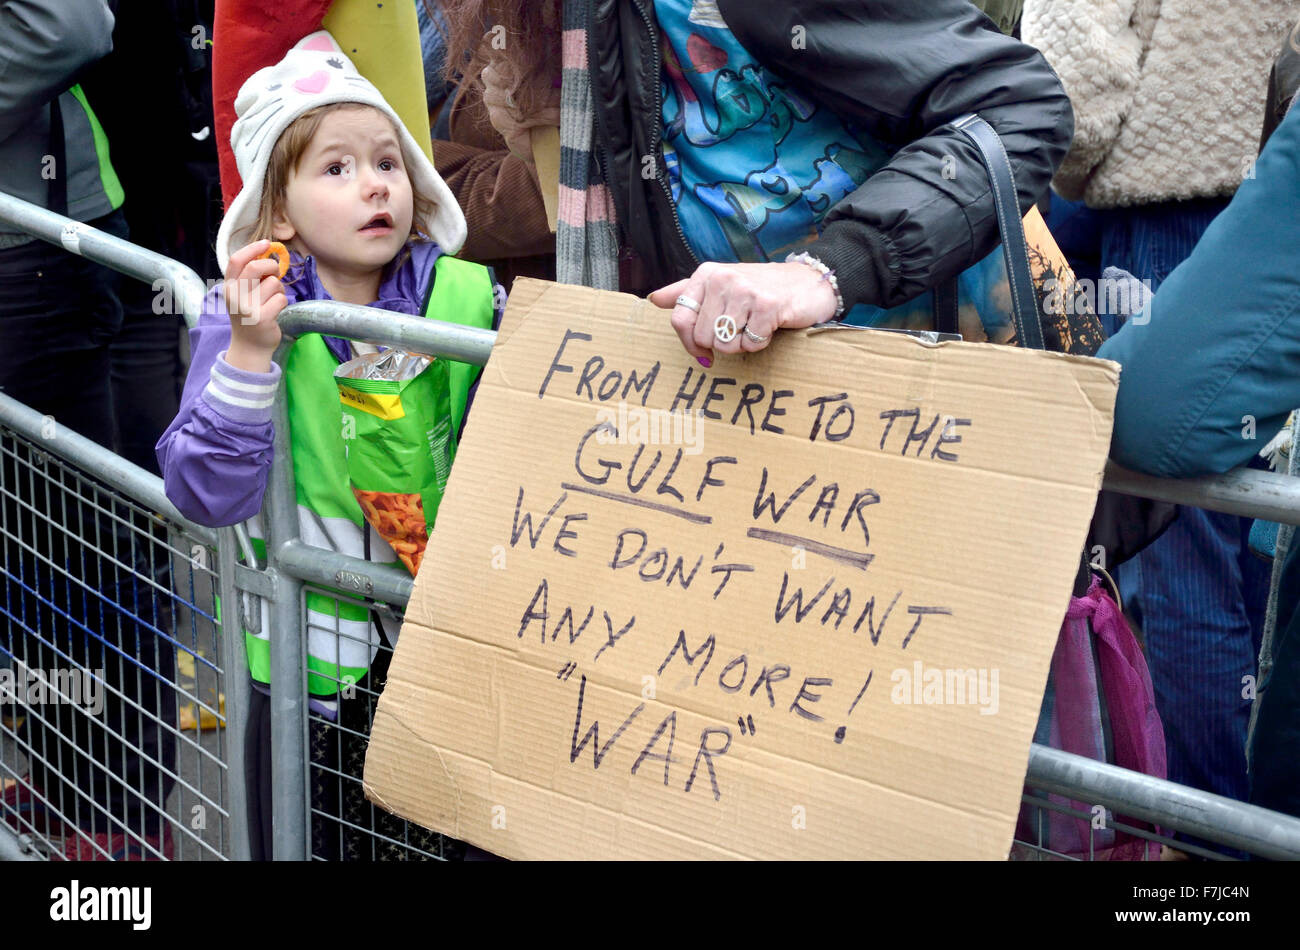 Jeune fille avec sa mère à la bombe n'est pas la Syrie manifestation devant Downing Street, Londres, 28 Novembre 2015 Banque D'Images